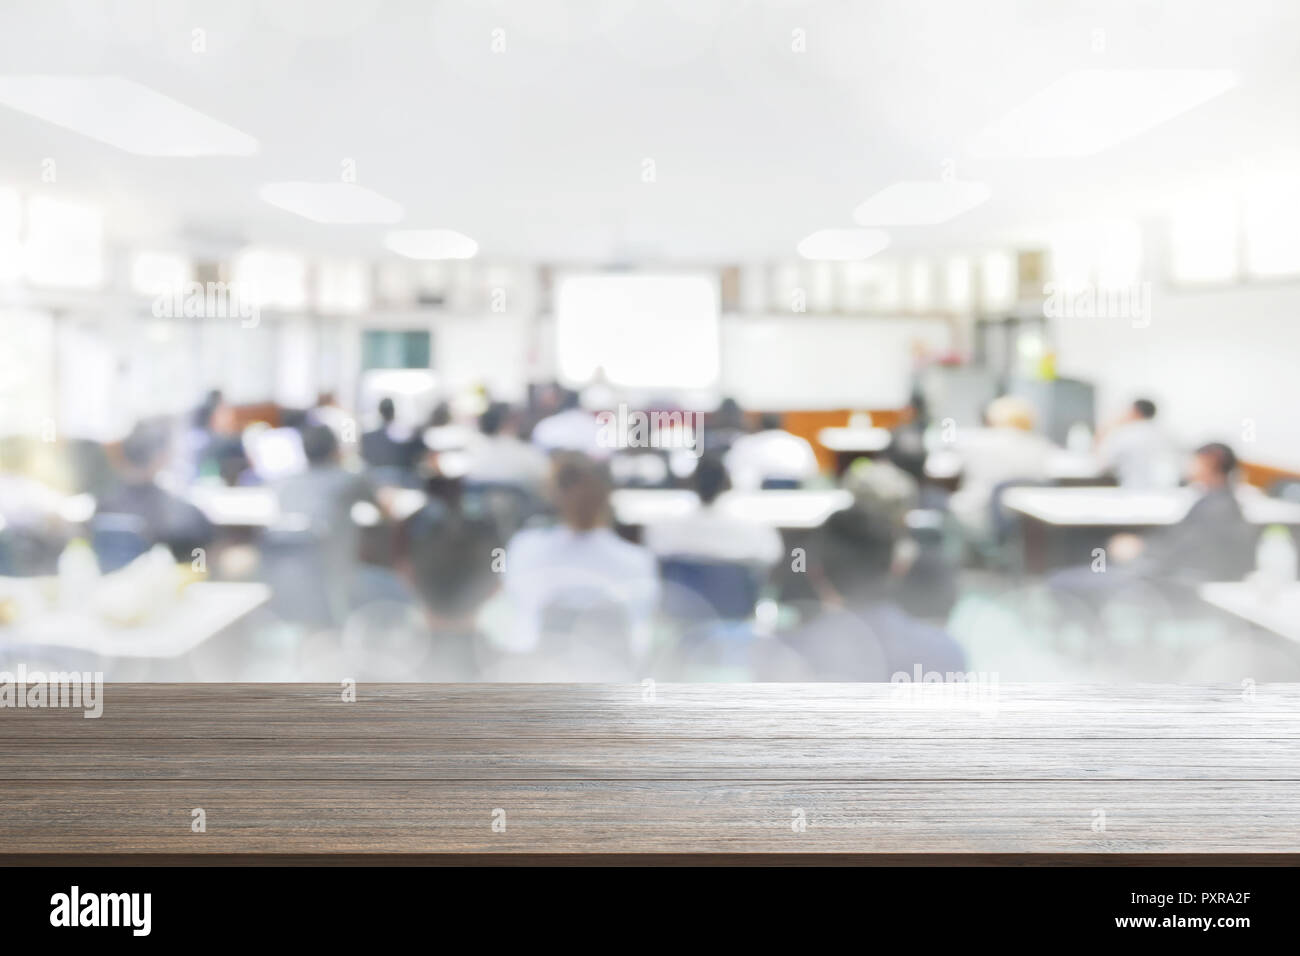 Holz Tisch Hintergrund verschwommen Menschen im Seminarraum Bildung Vortrag oder meetting Konzept, abstrakte blur Menschen Hintergrund Stockfoto